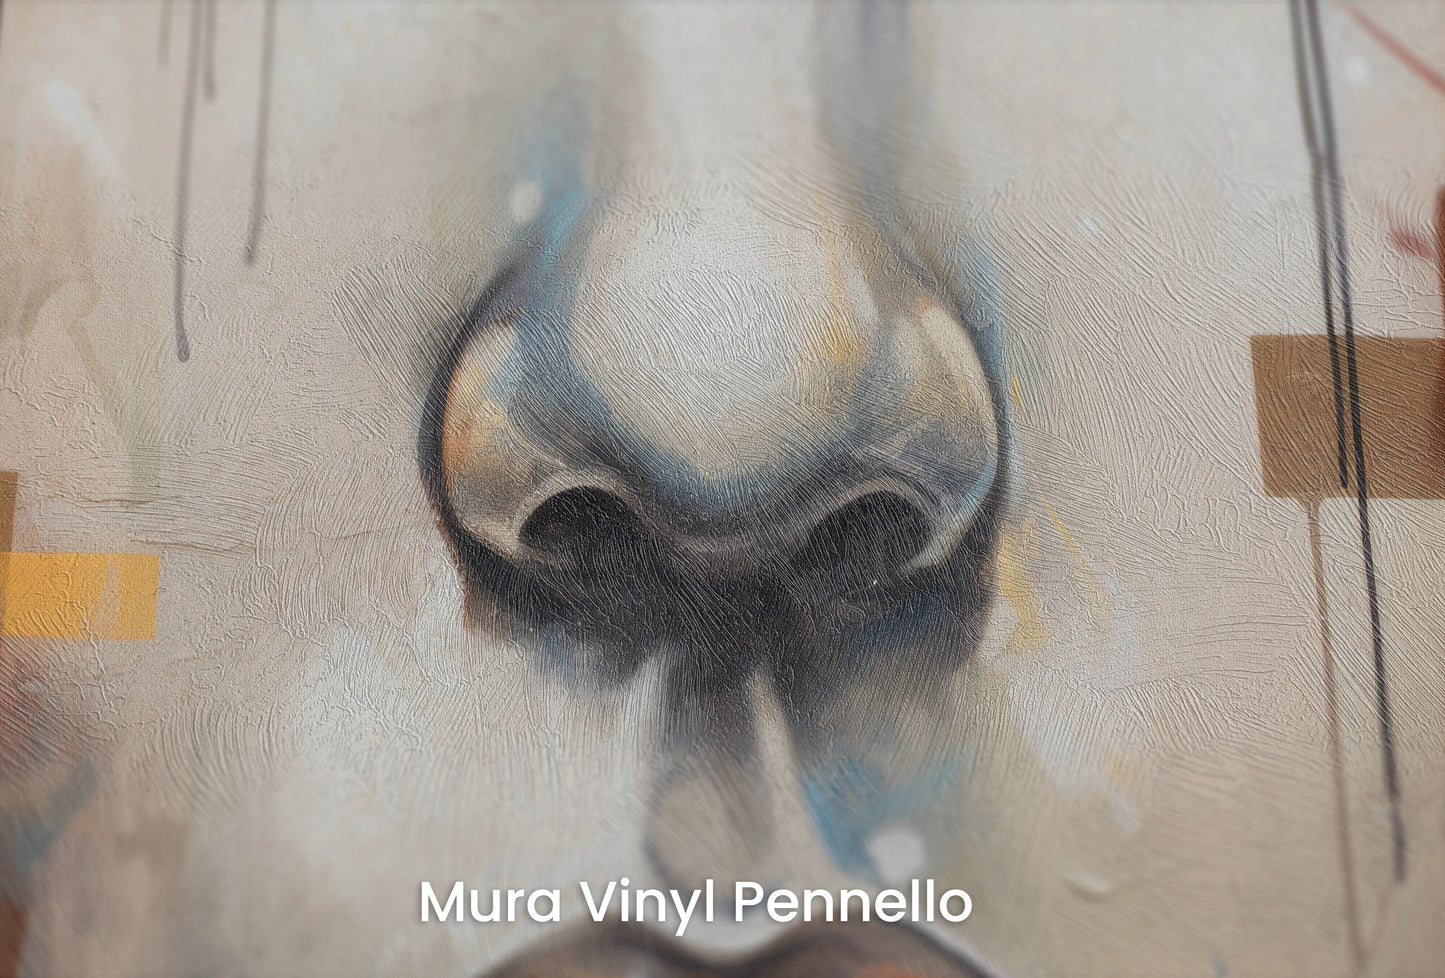 Zbliżenie na artystyczną fototapetę o nazwie Urban Reflections na podłożu Mura Vinyl Pennello - faktura pociągnięć pędzla malarskiego.